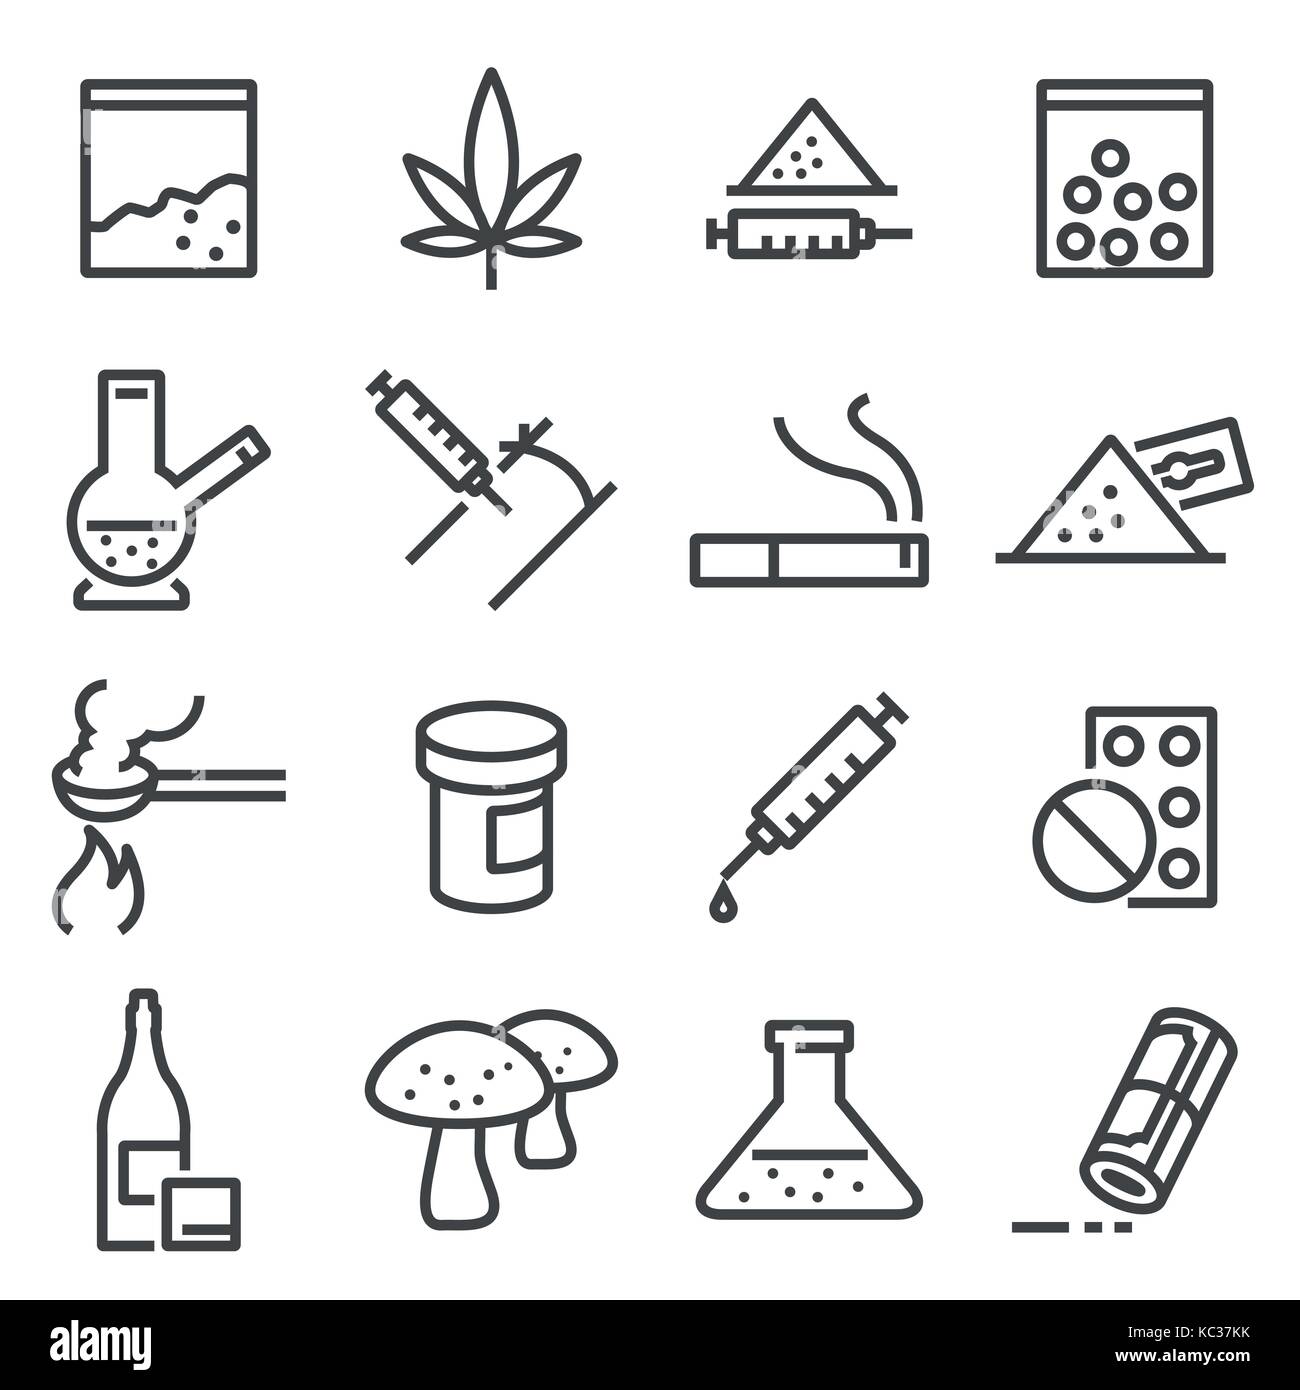 Ligne médicaments icônes. contient des icônes telles que la marijuana, cocaïne, héroïne, lsd extasy Illustration de Vecteur